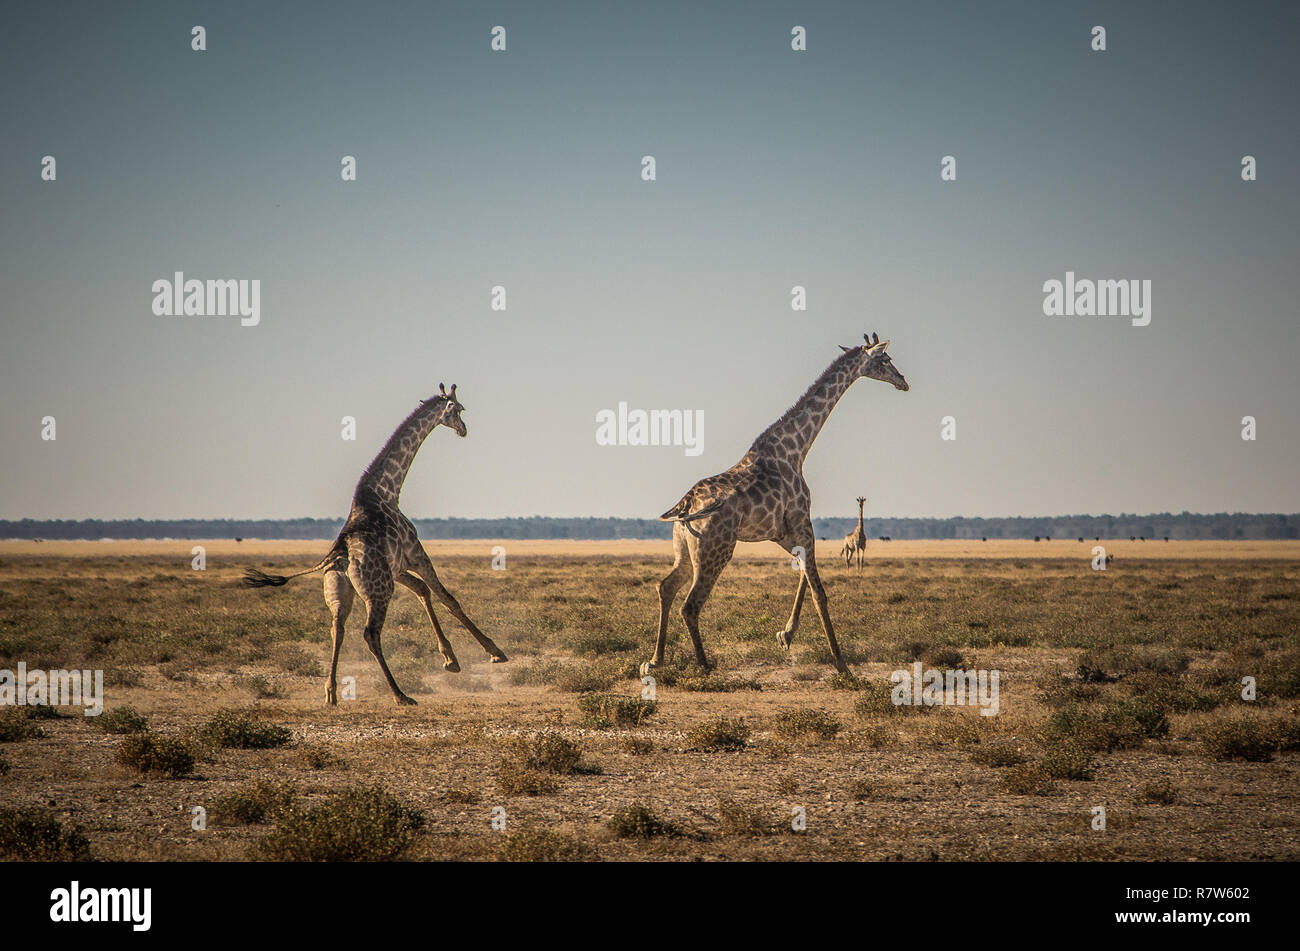 Two giraffes running Stock Photo